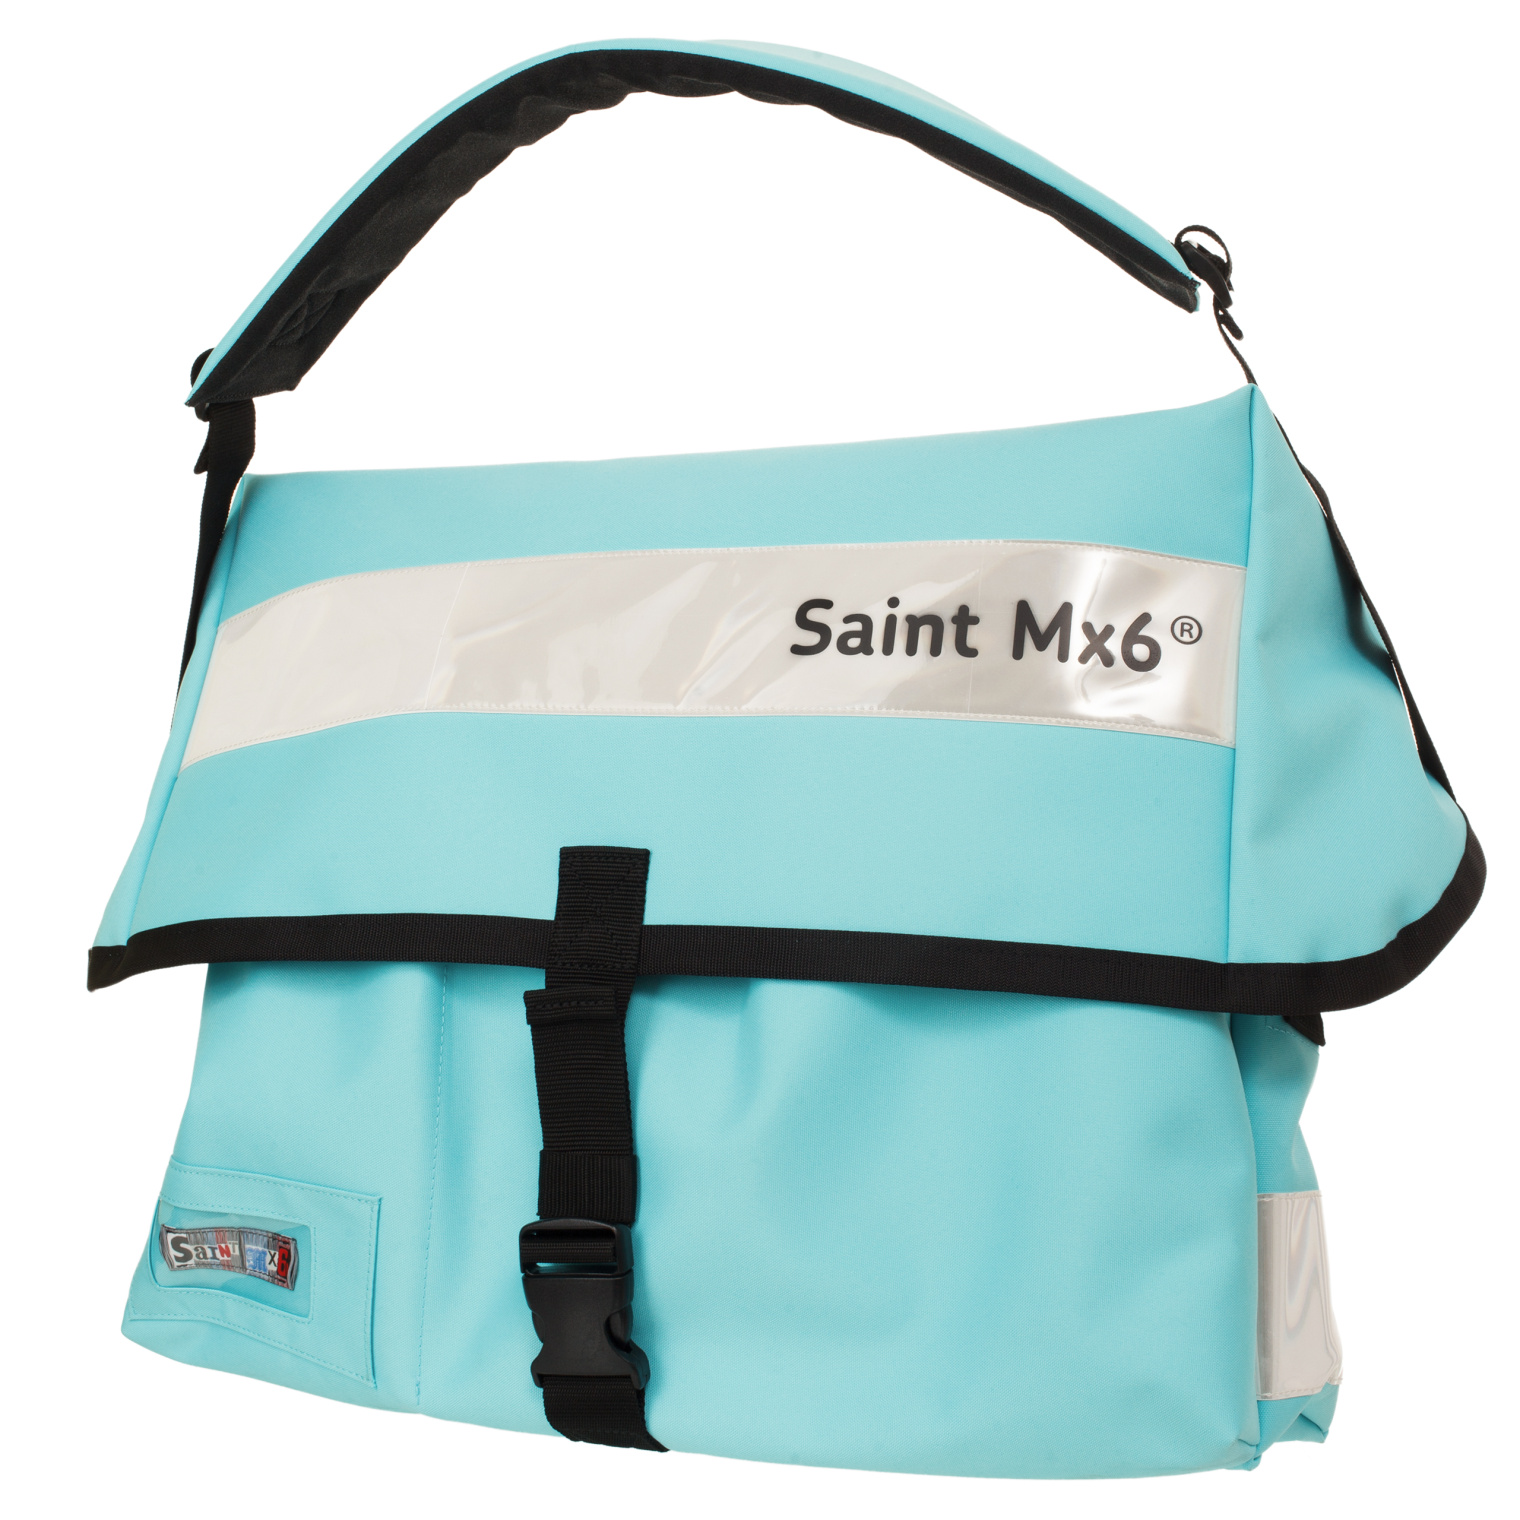 Saint Michael Black messanger bag